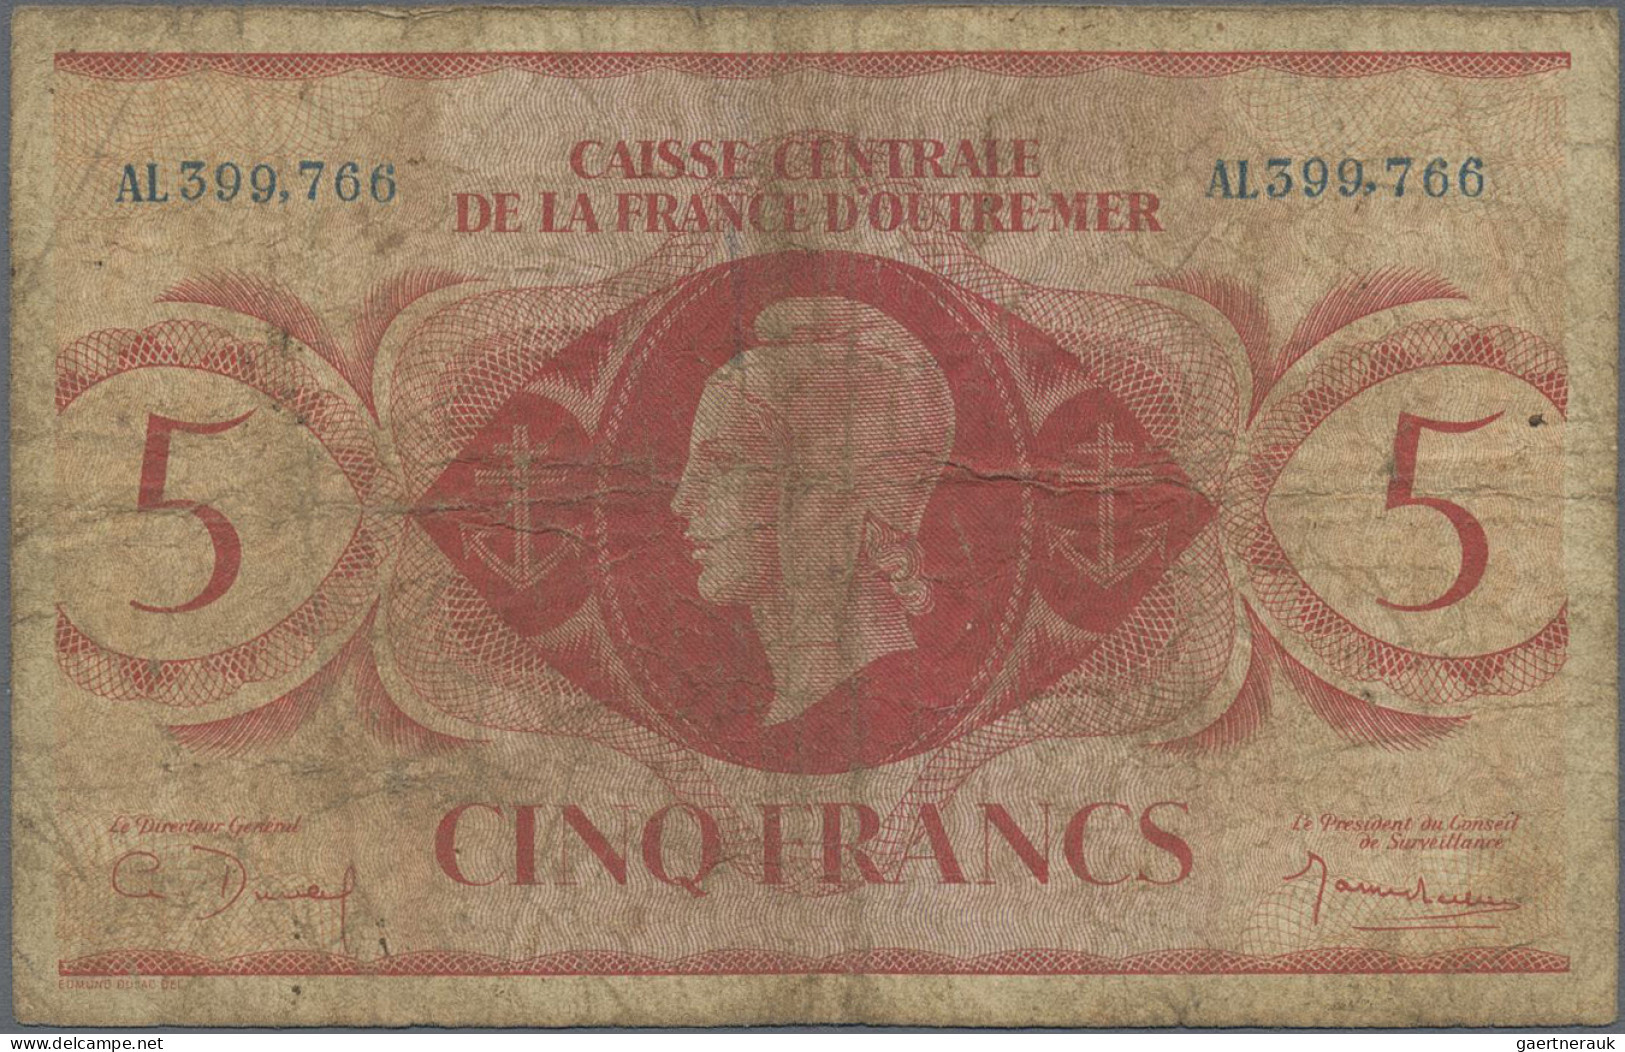 French Equatorial Africa: Caisse Centrale De La France D'Outre-Mer – FRENCH EQUA - Aequatorial-Guinea